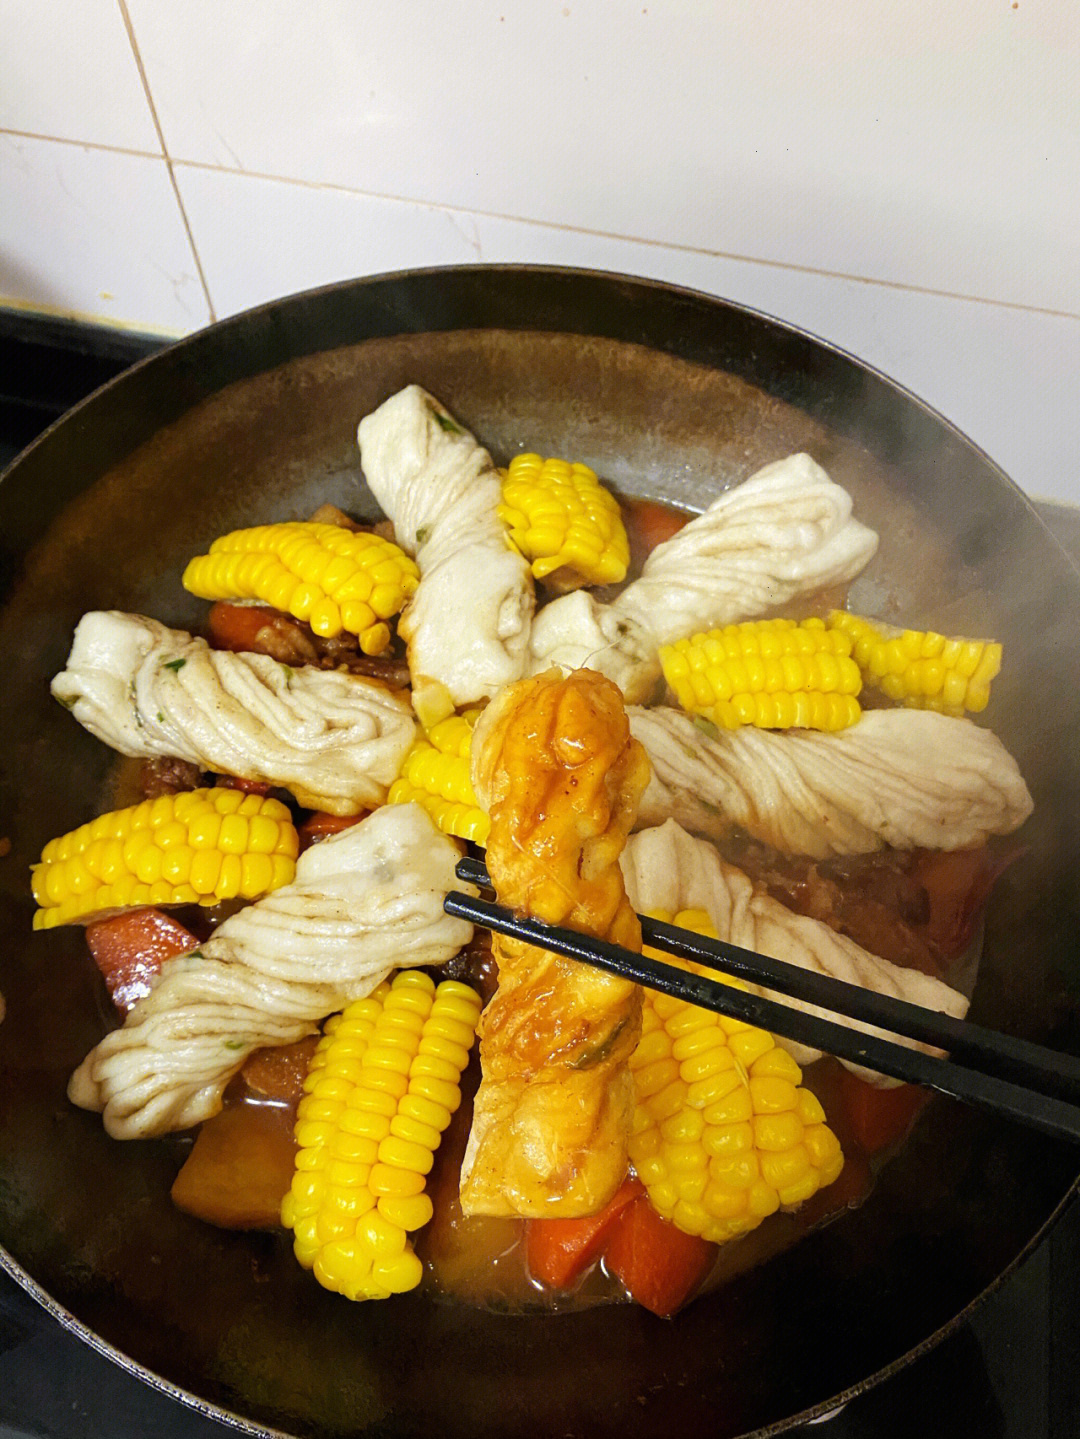 结合东北乱炖,喜欢吃的一锅炖了食材97:排骨  土豆  胡萝卜  面粉